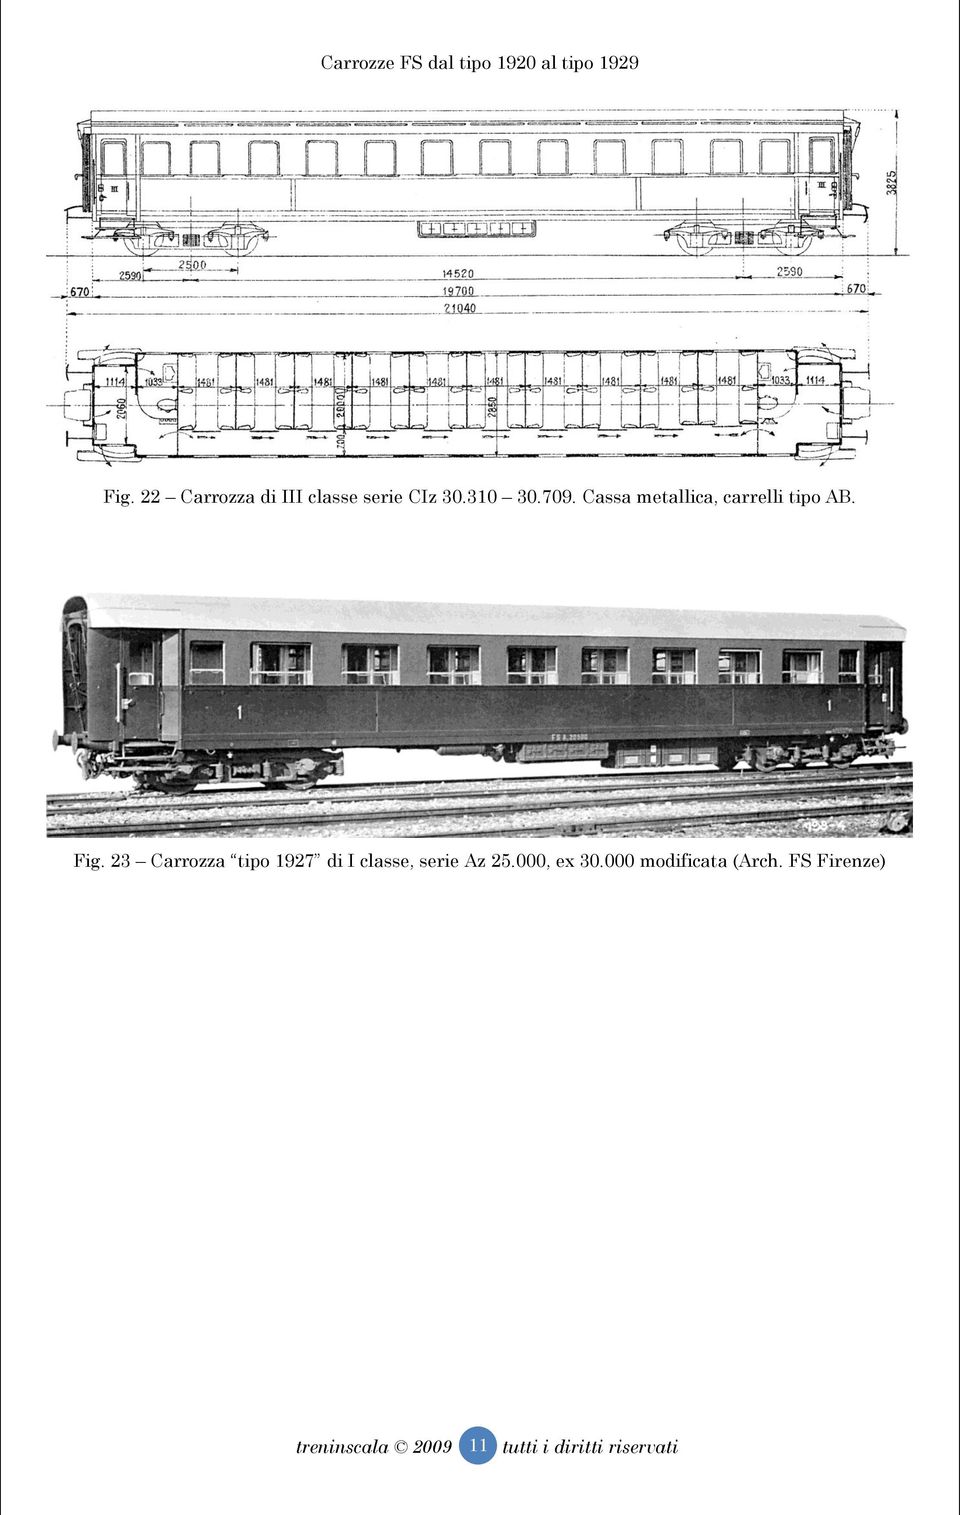 Fig. 23 Carrozza tipo 1927 di I classe, serie